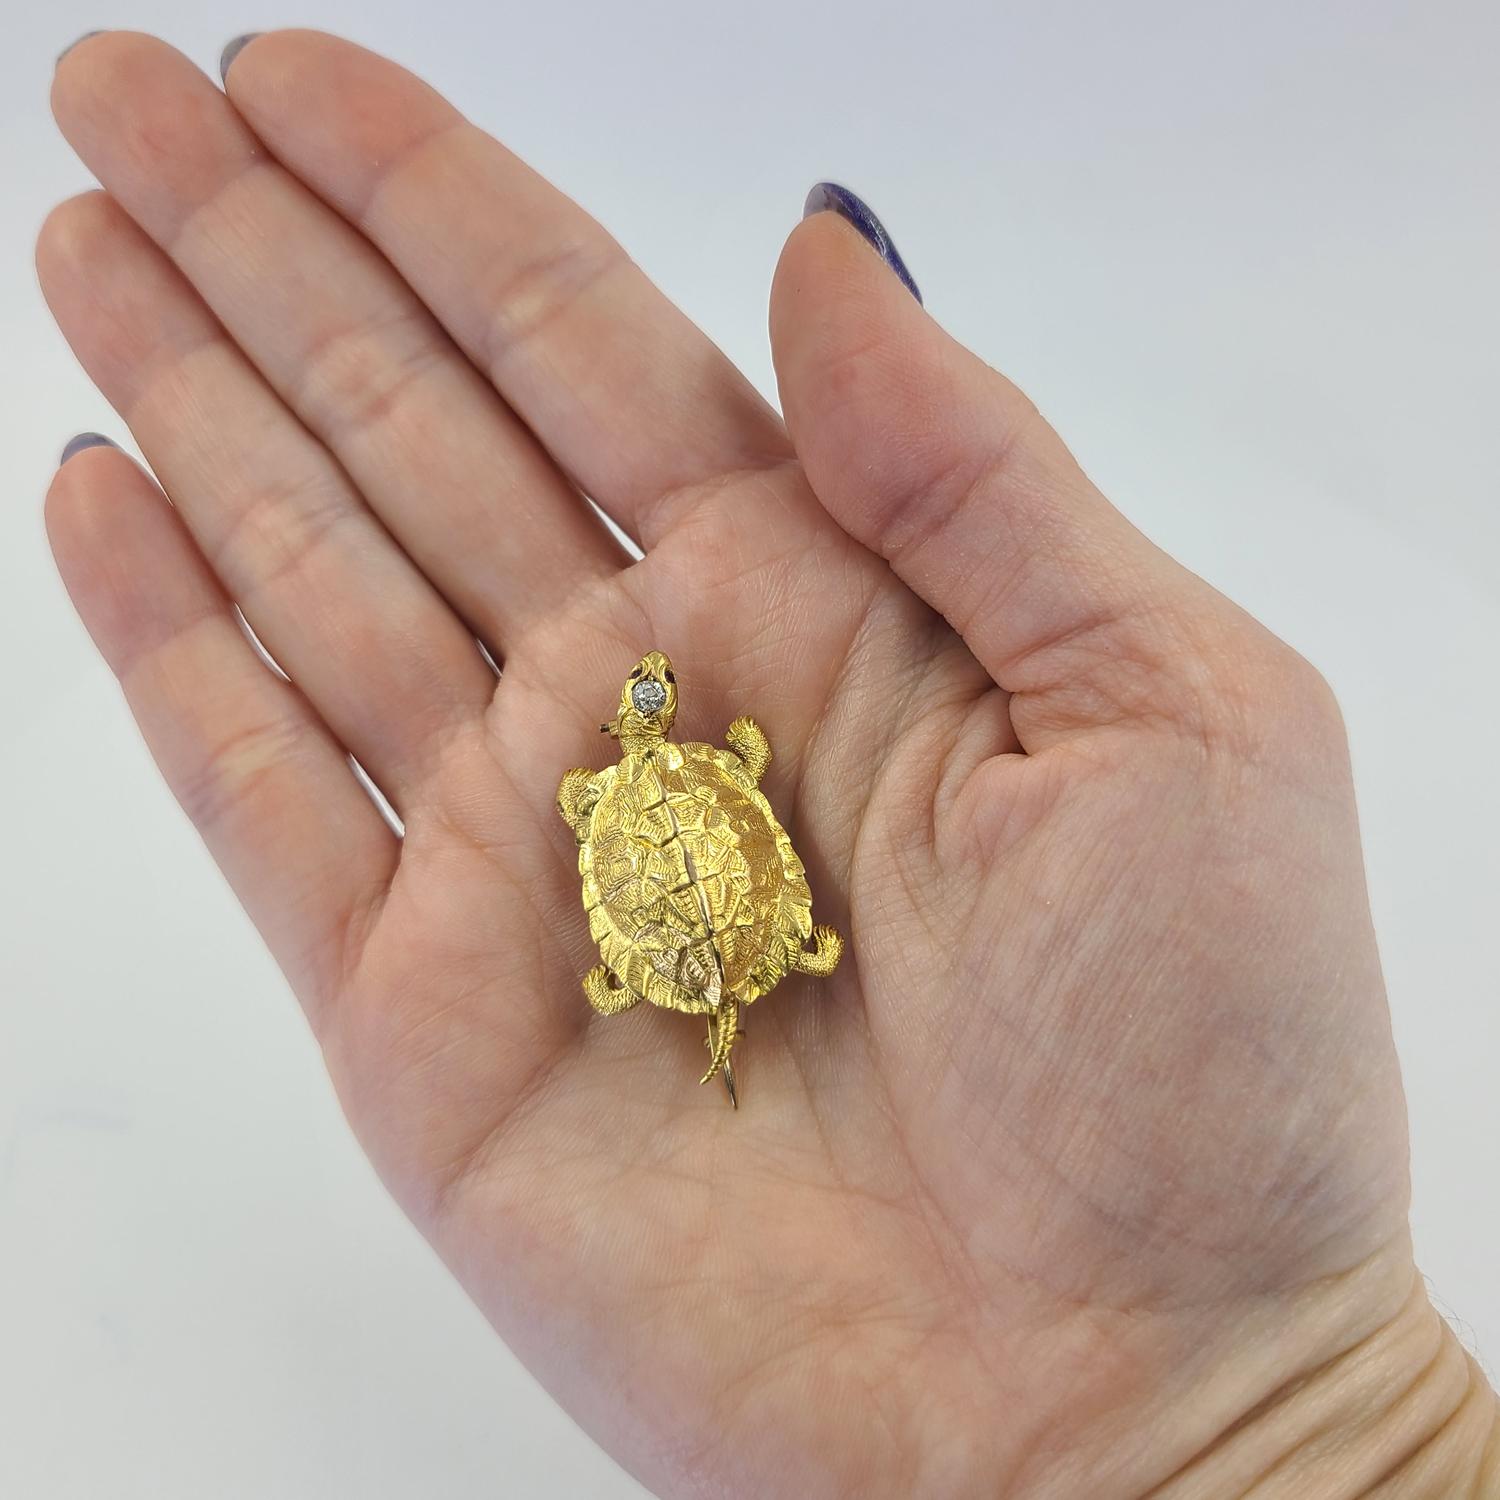 Épingle de tortue ancienne en or jaune 14 carats, avec texture satinée, diamant de taille européenne ancienne de 0,03 carat et yeux en rubis de 0,01 carat. Le poids fini est de 7.0 grammes.